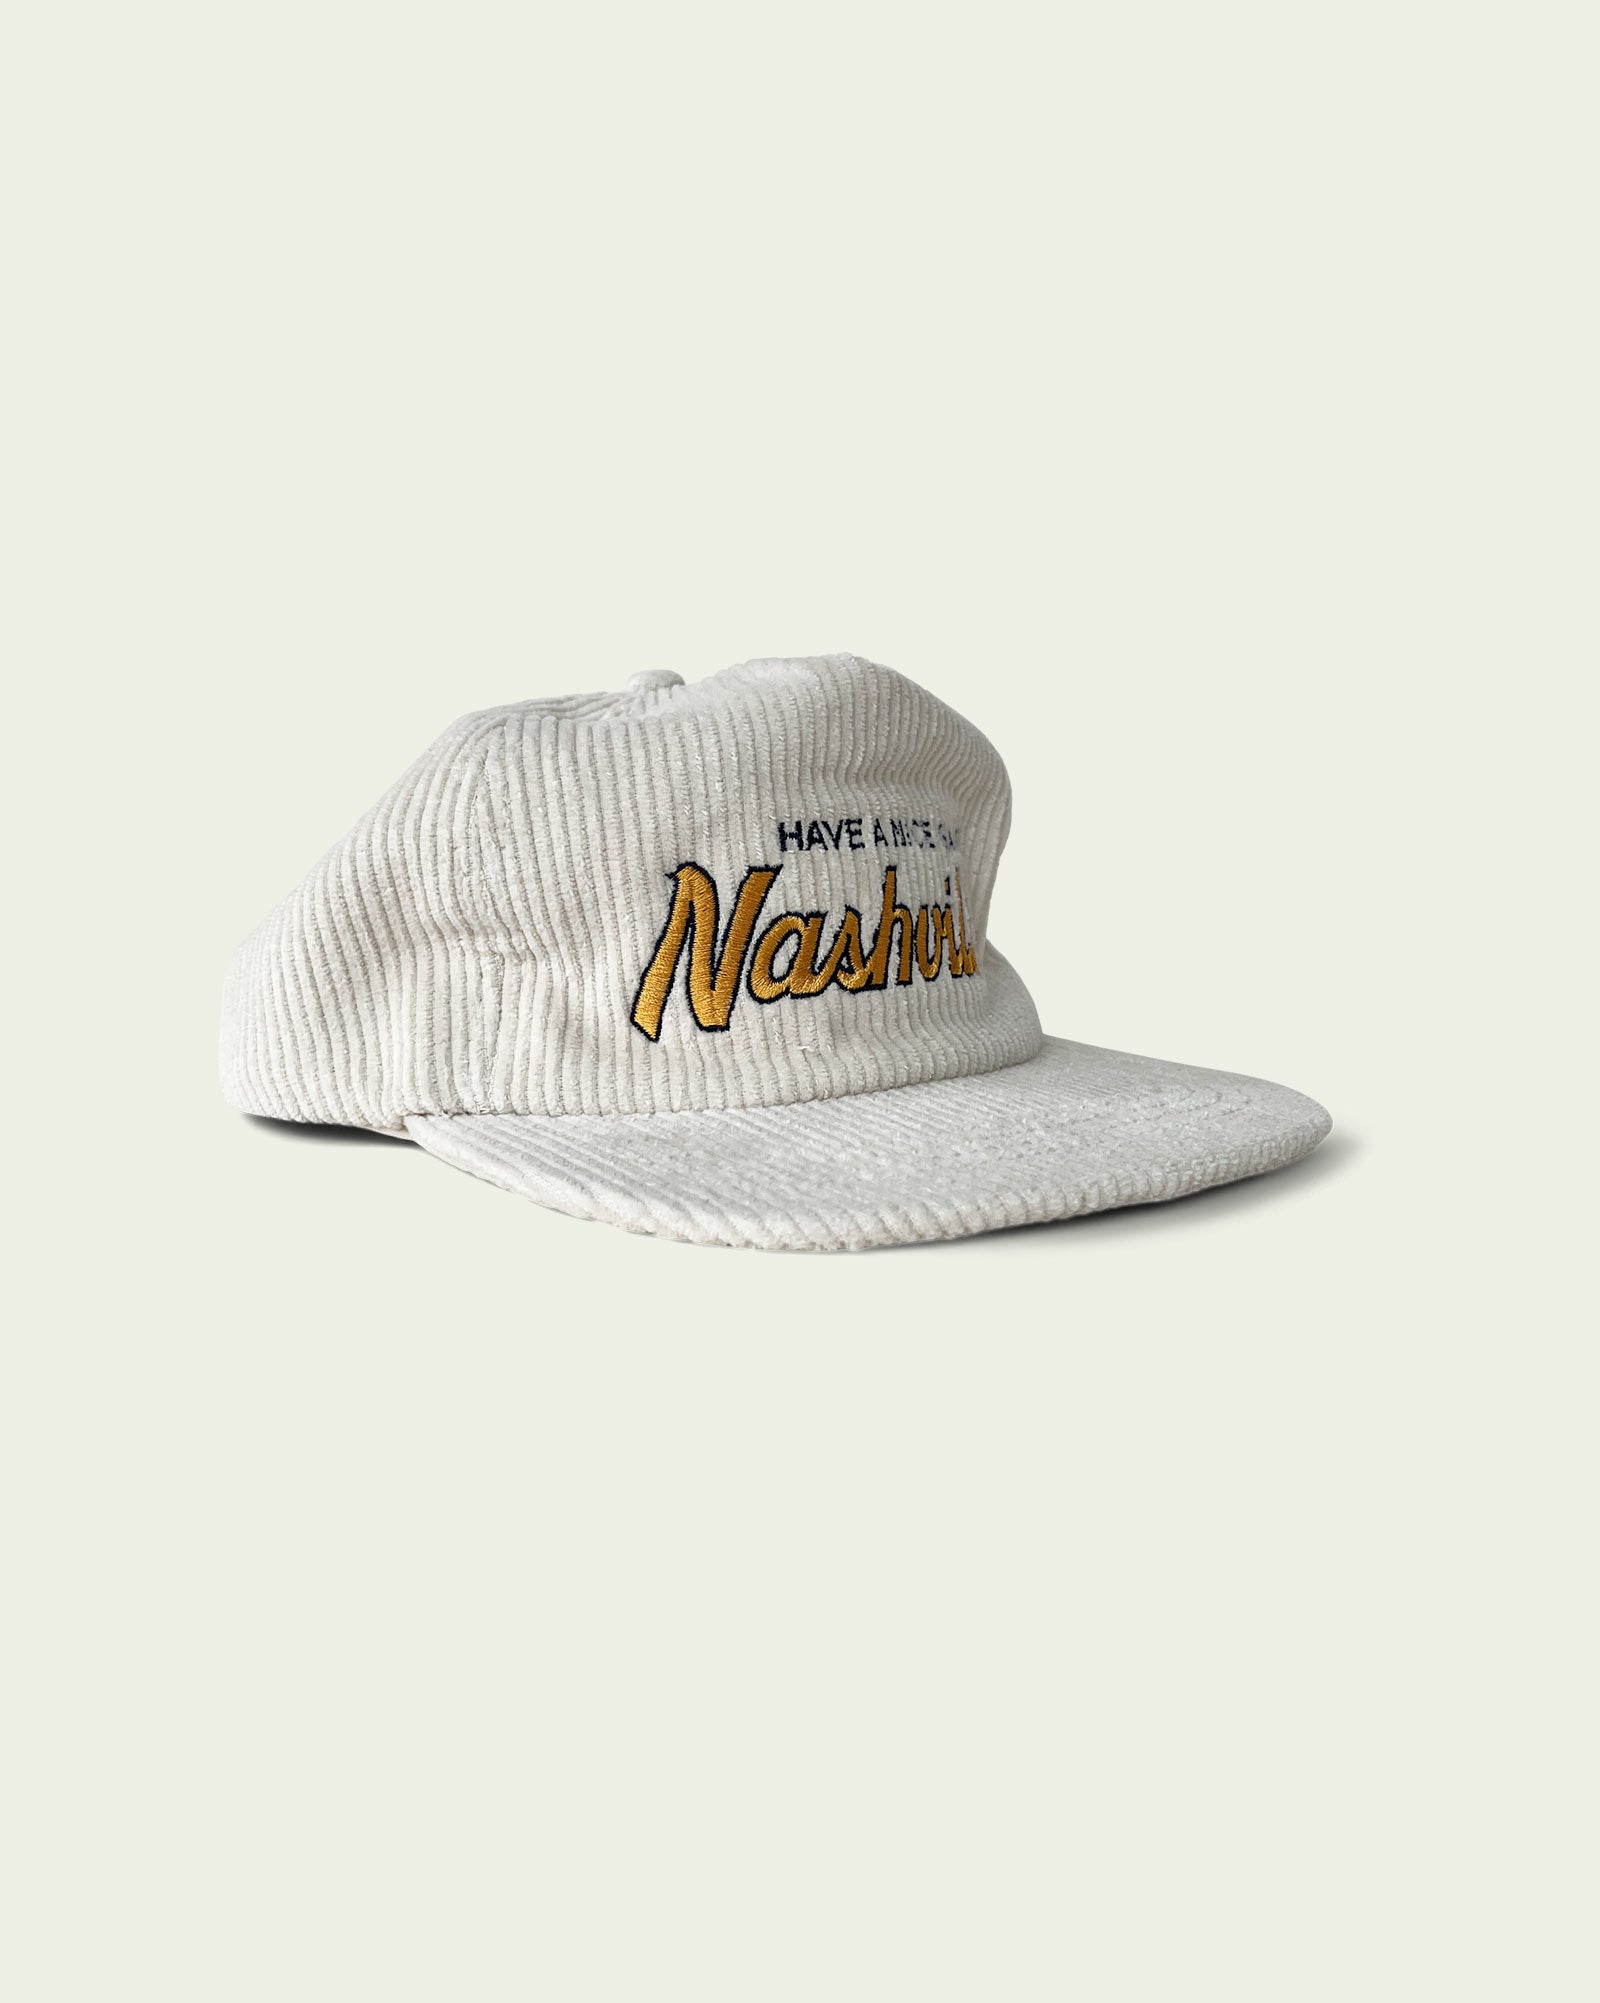 Have A Nice Game® Nashville Corduroy Snapback Hat